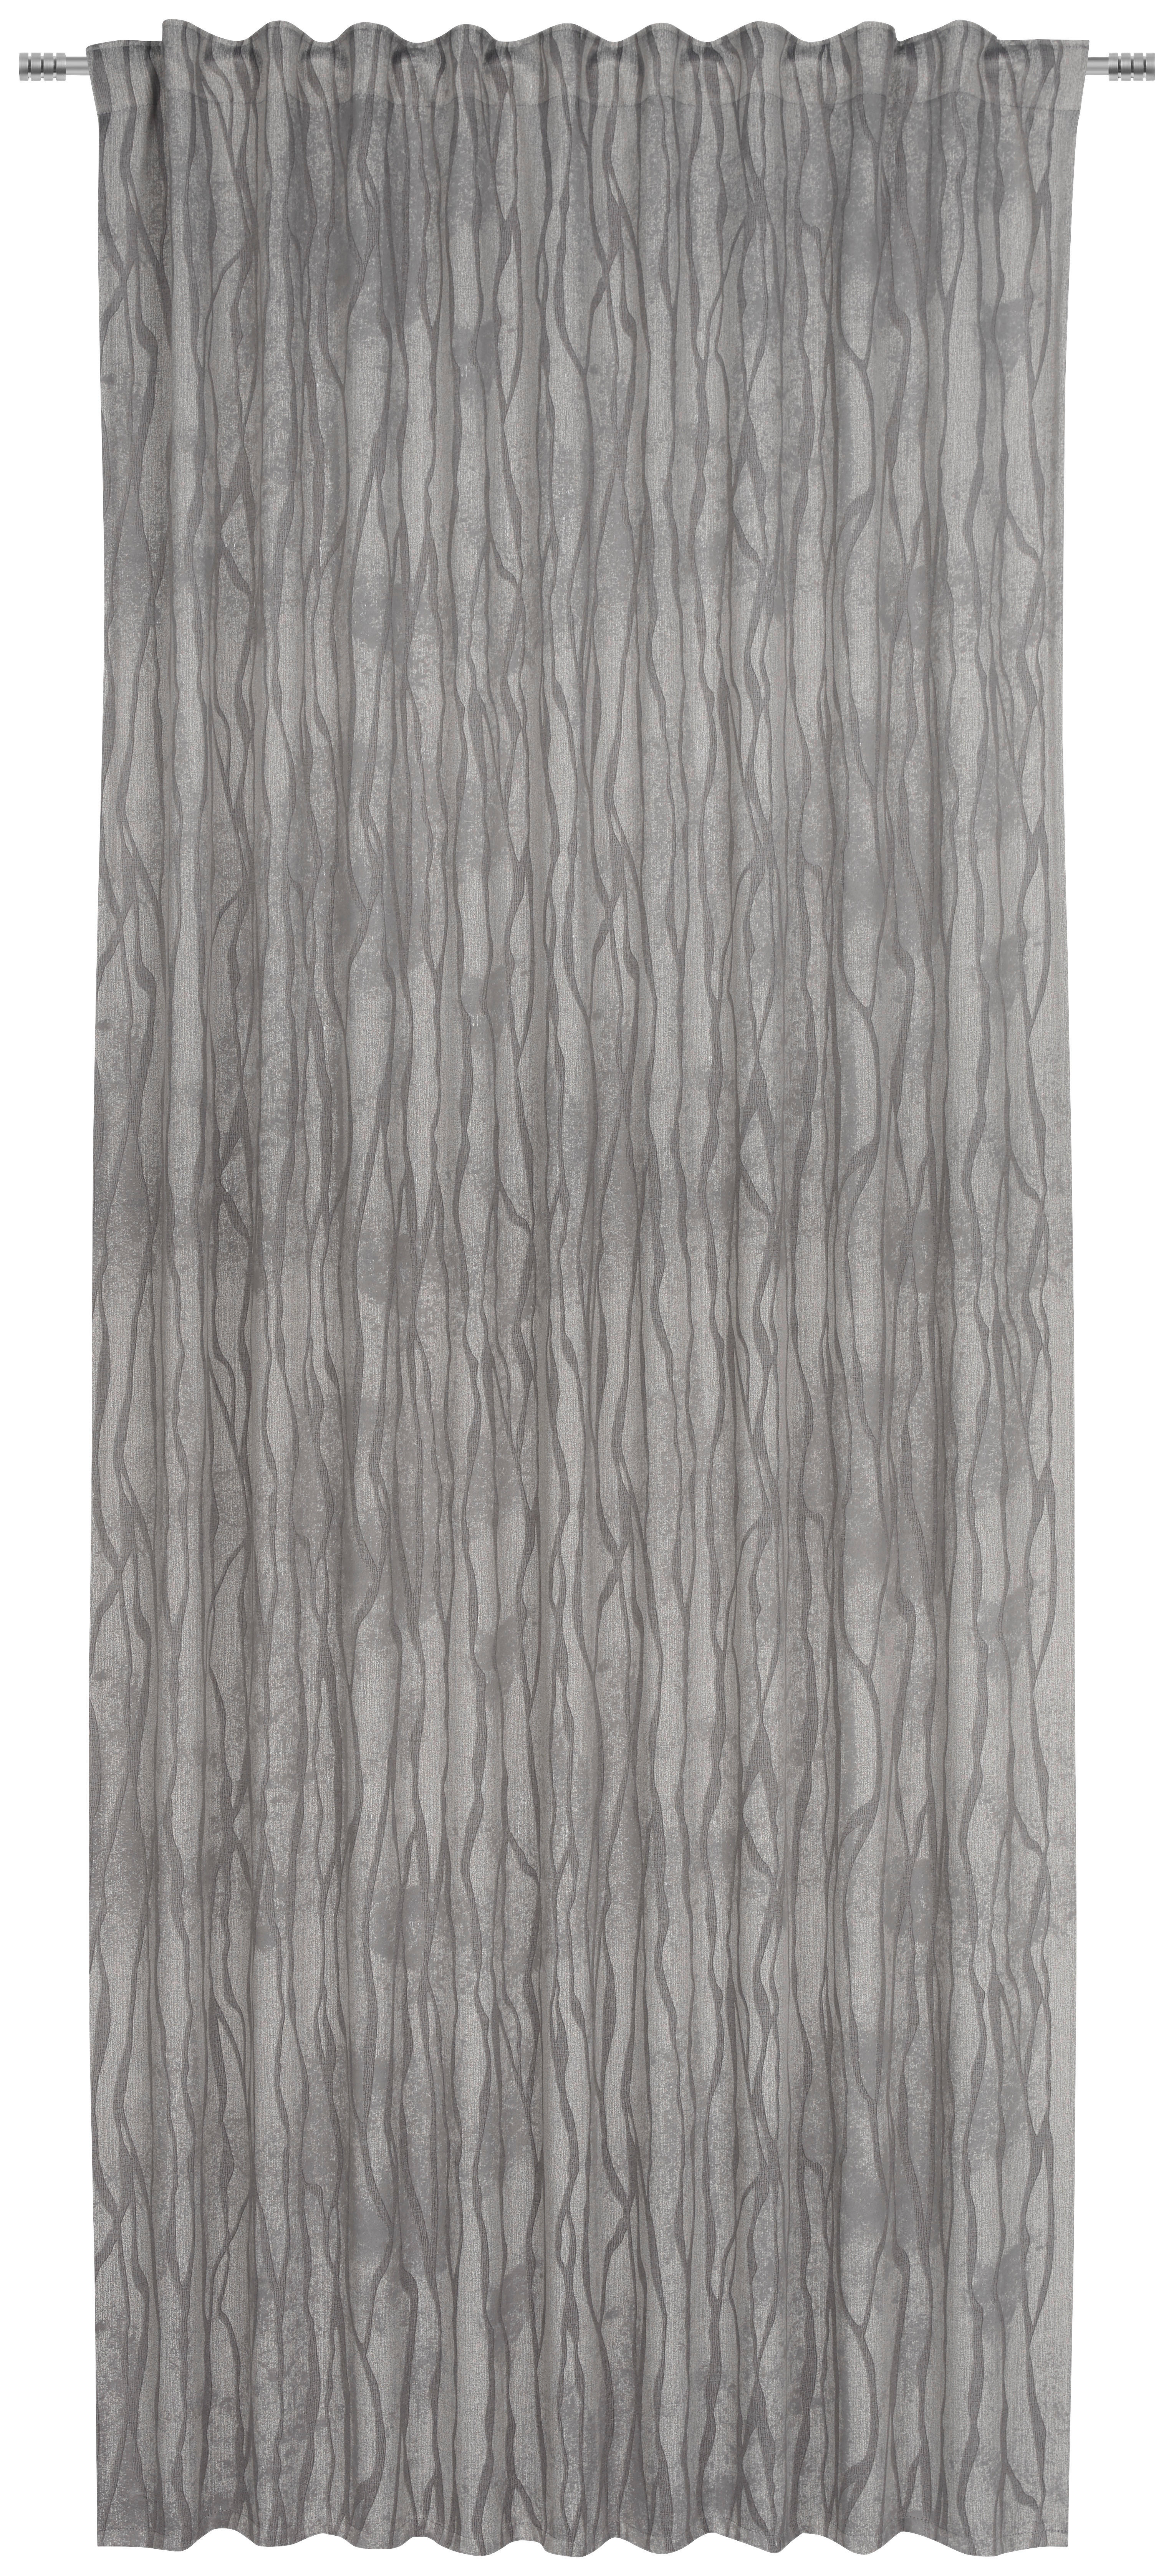 GARDINLÄNGD mörkläggning  - grå, Klassisk, textil (140/245cm) - Esposa